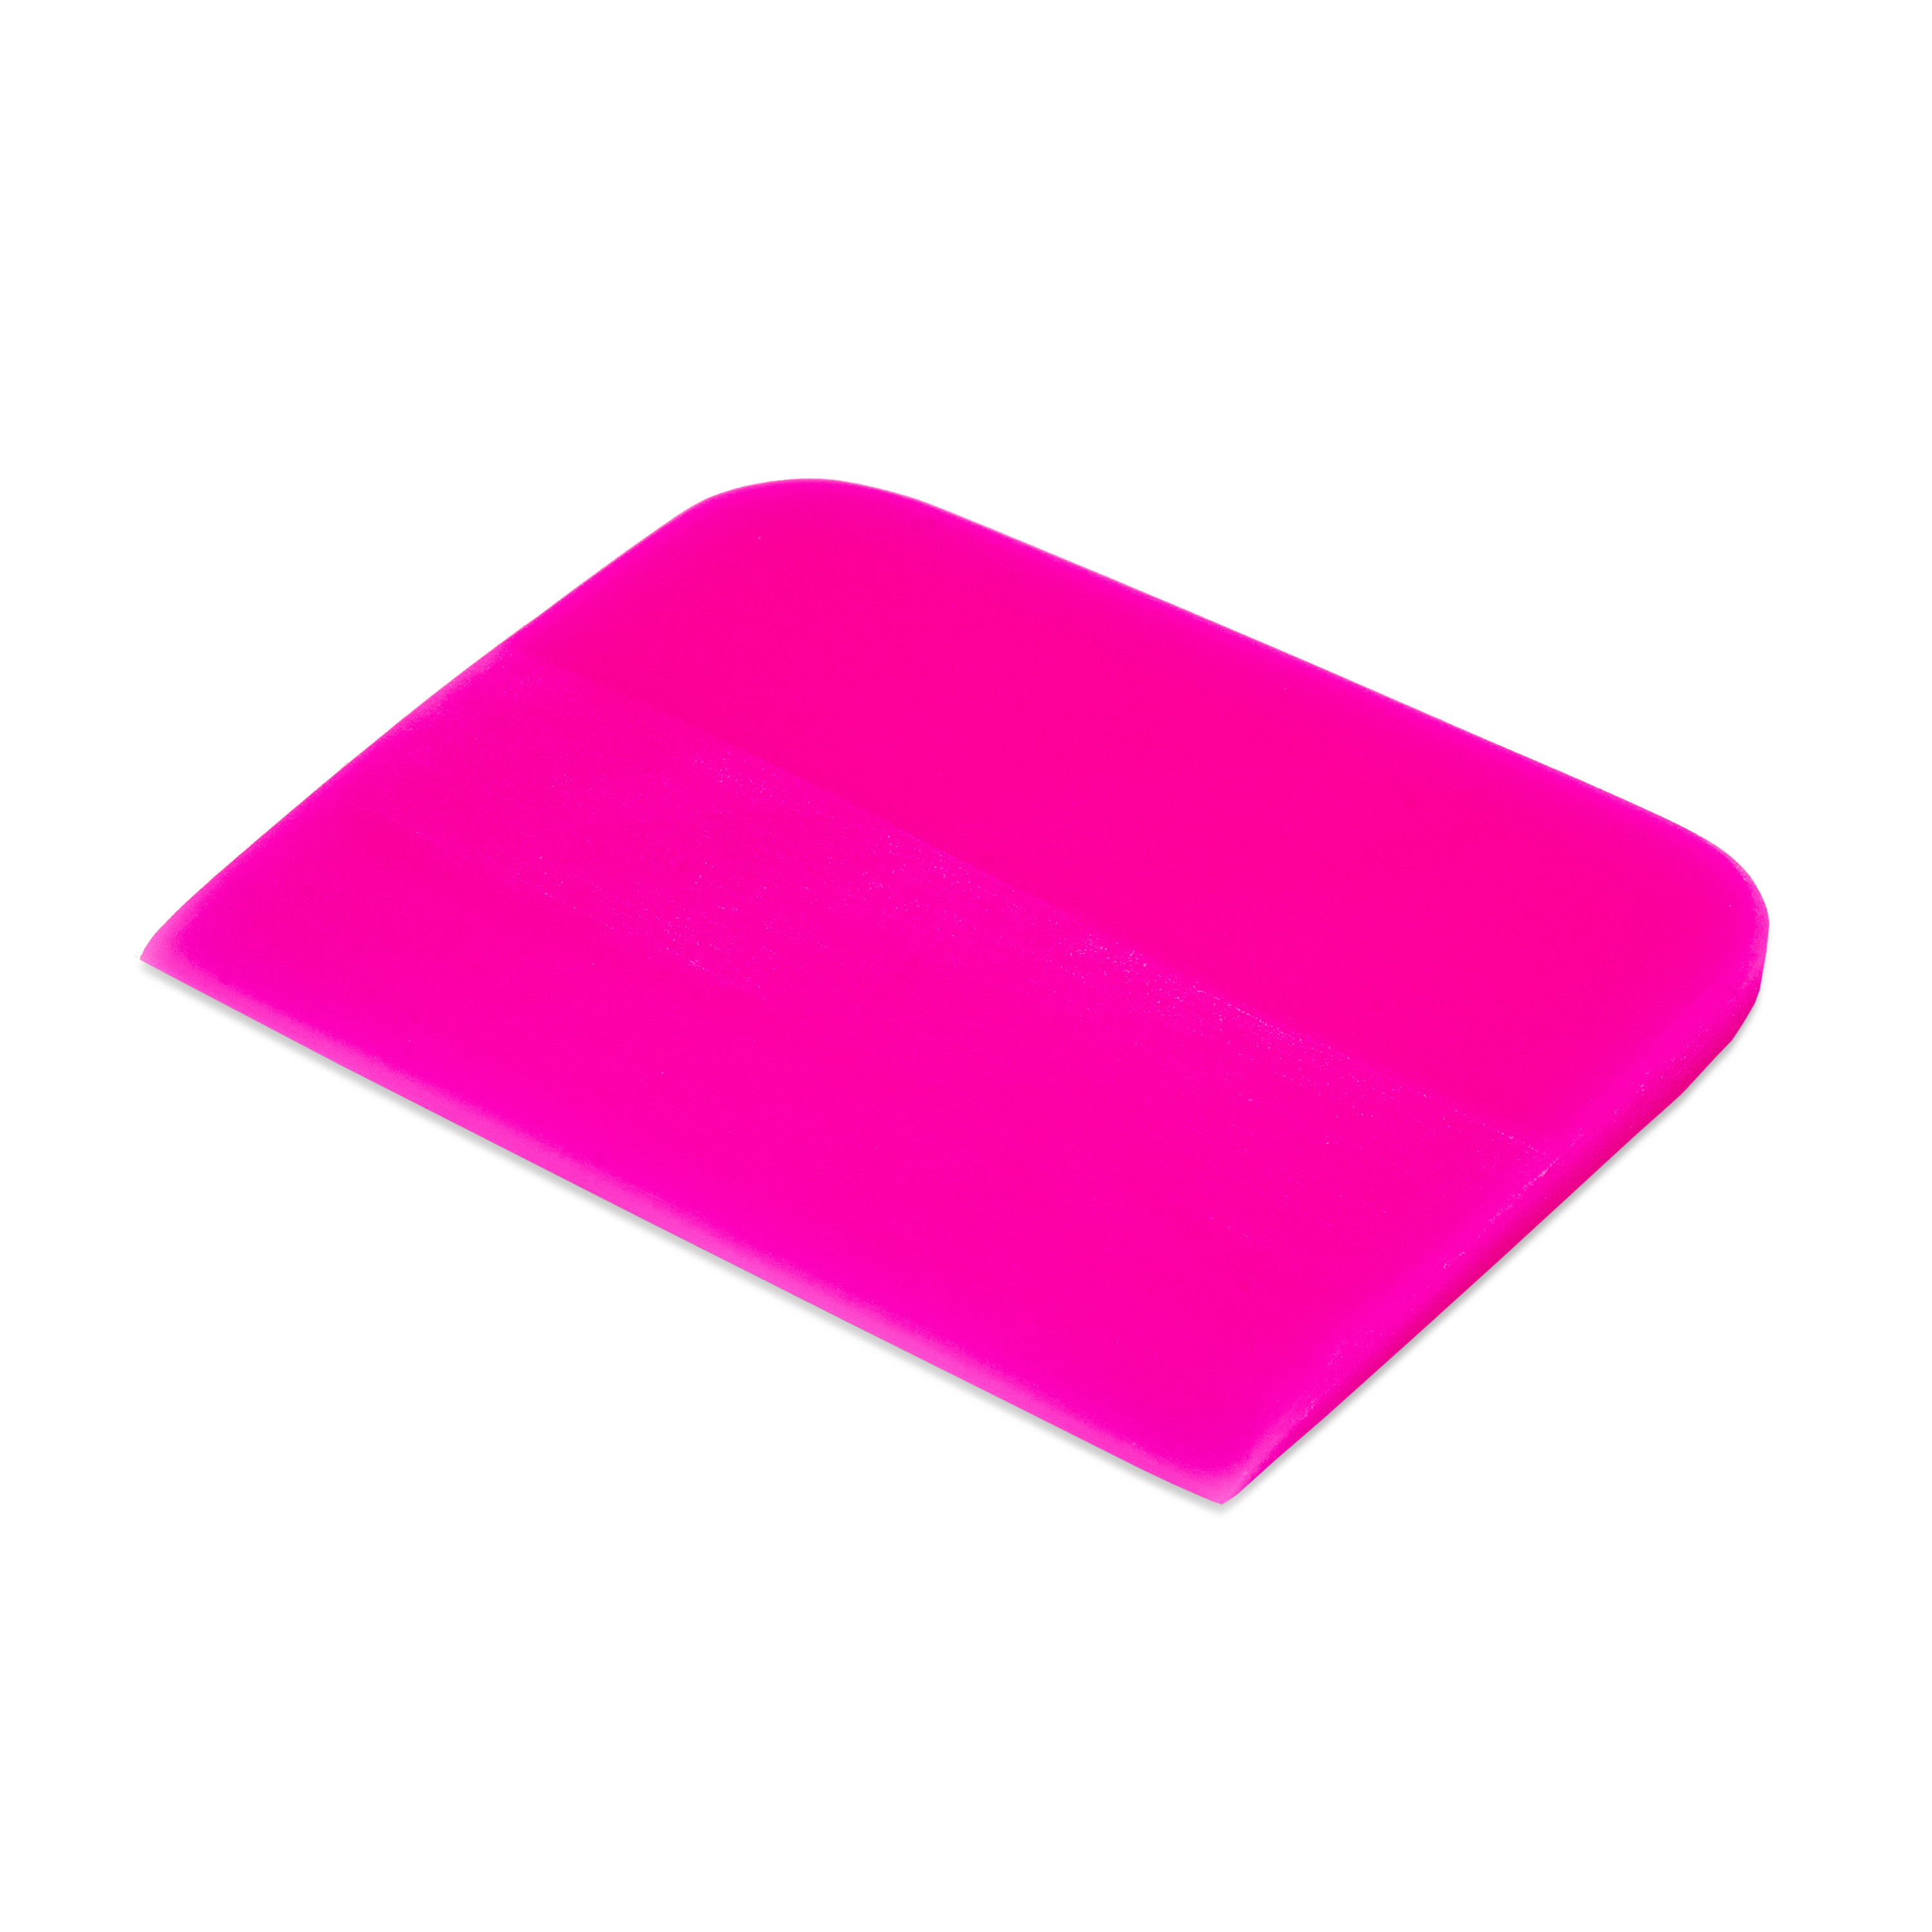 Выгонка полиуретановая розовая 10 x 7,5 см